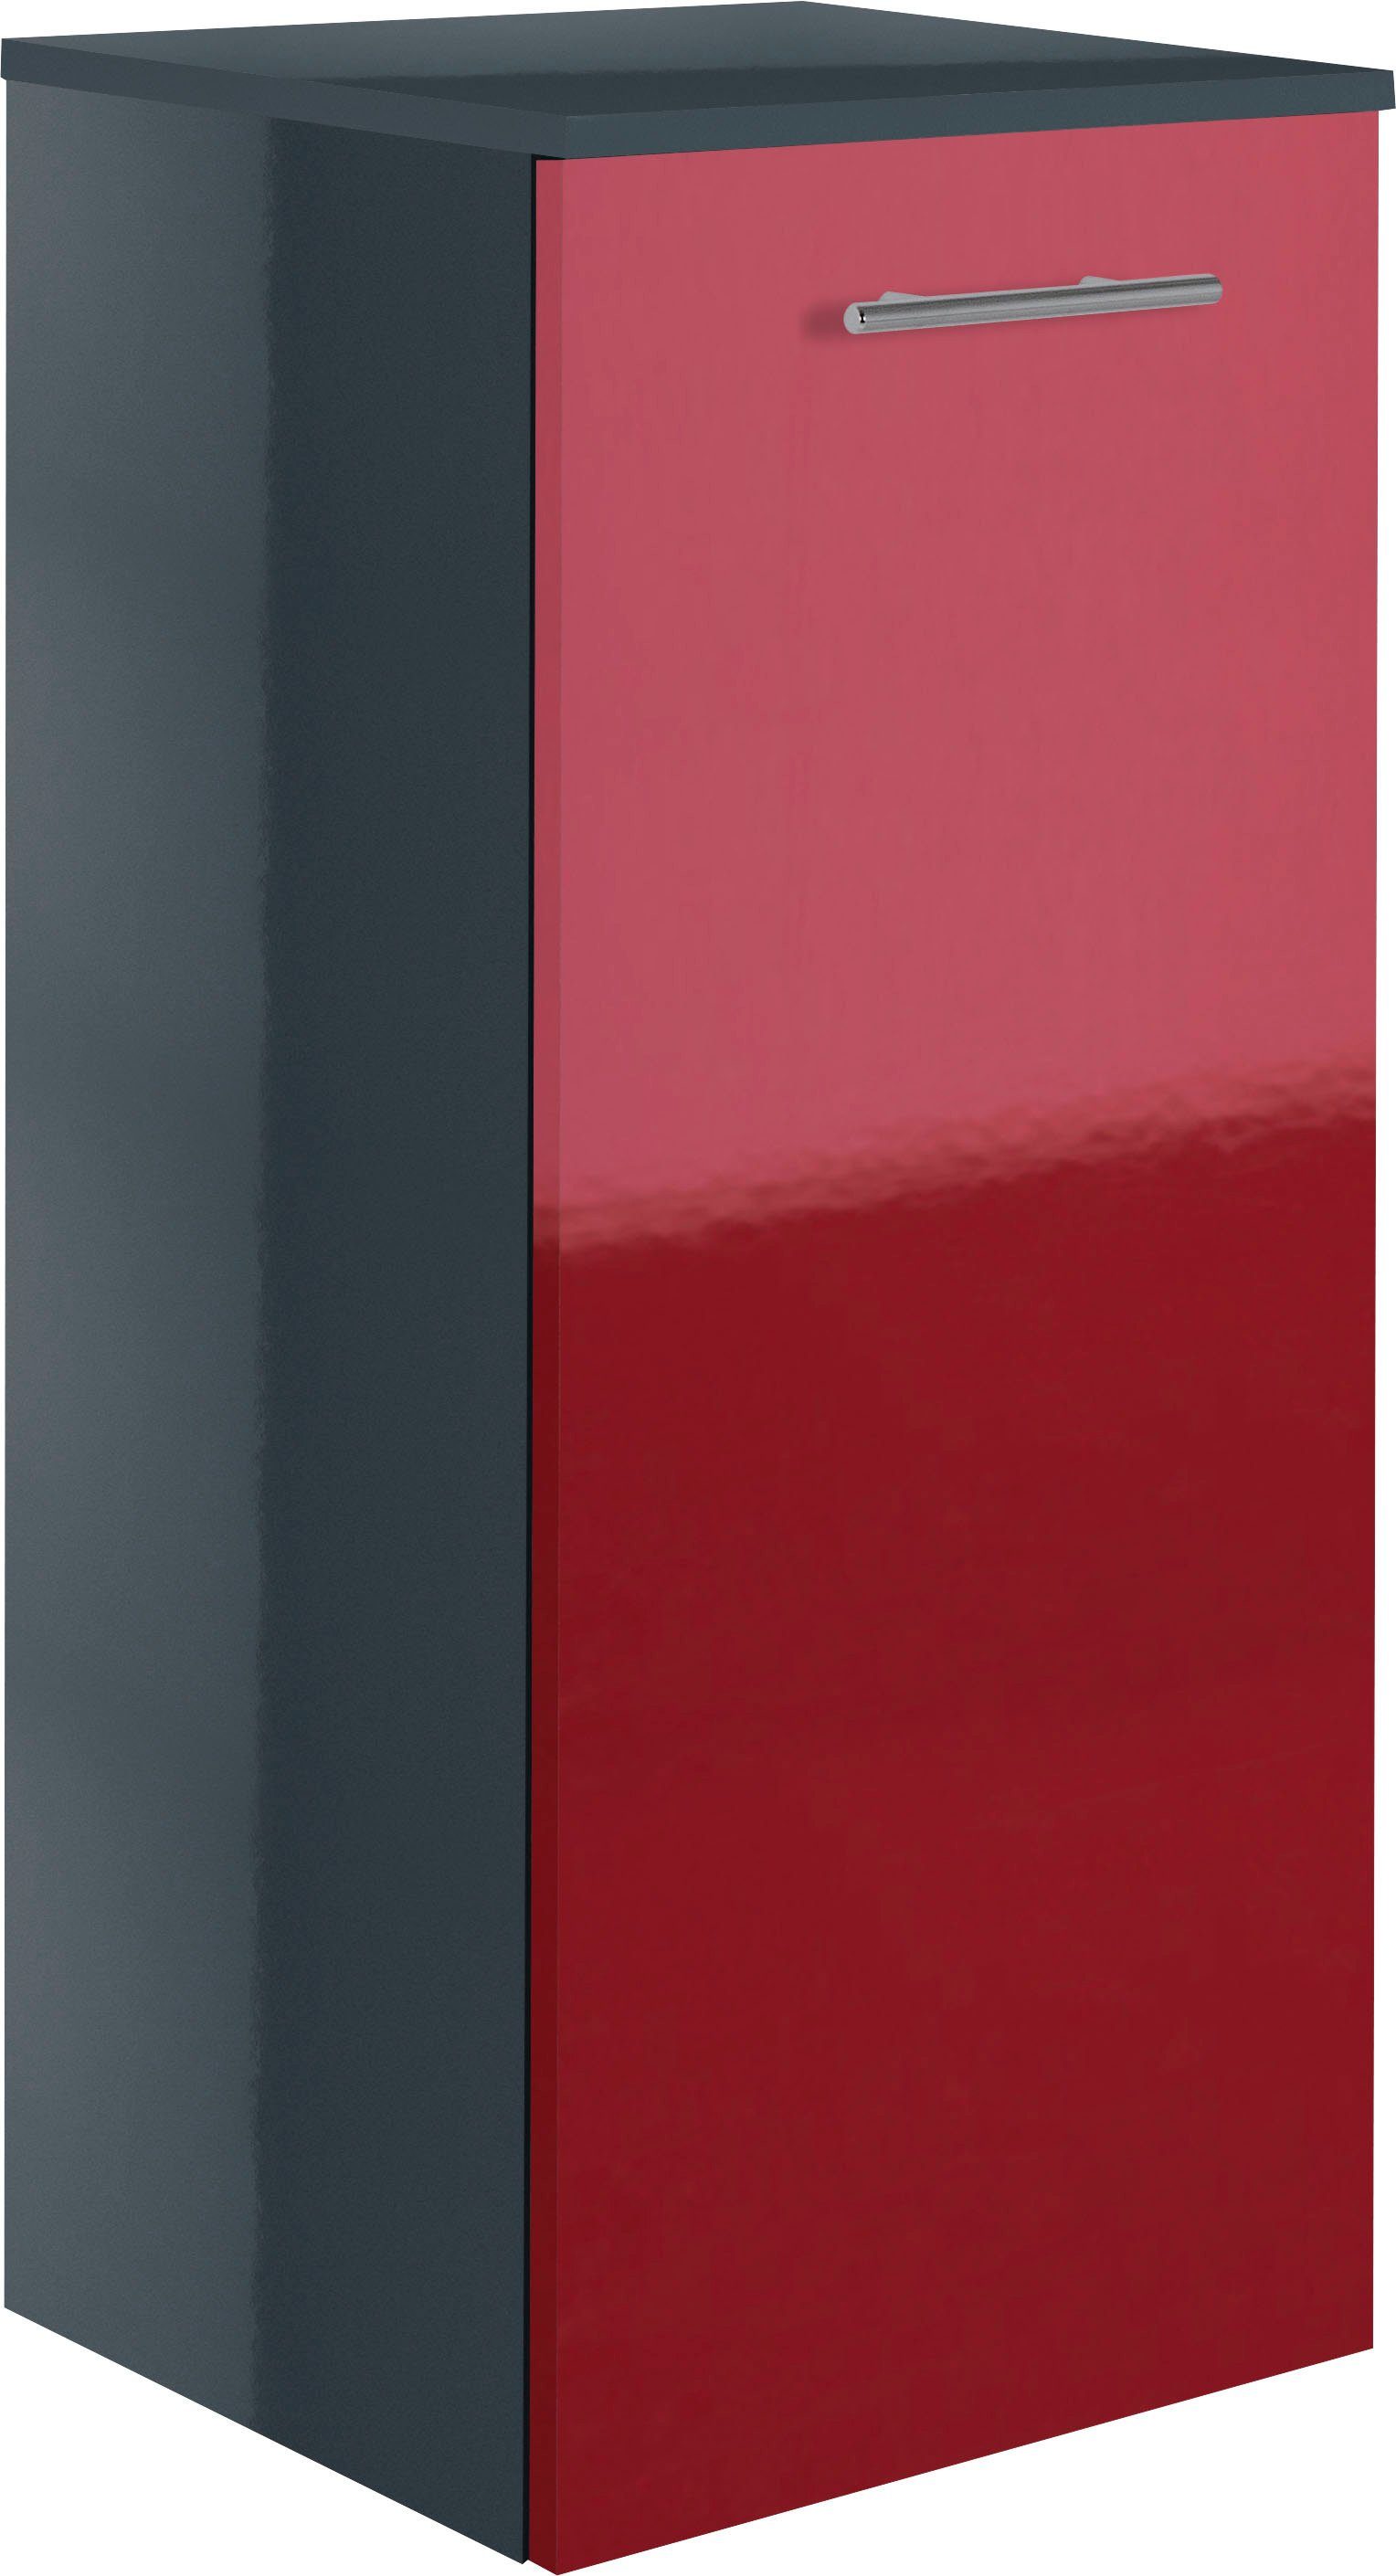 MARLIN Midischrank 3040, Breite 40 cm rot | anthrazit